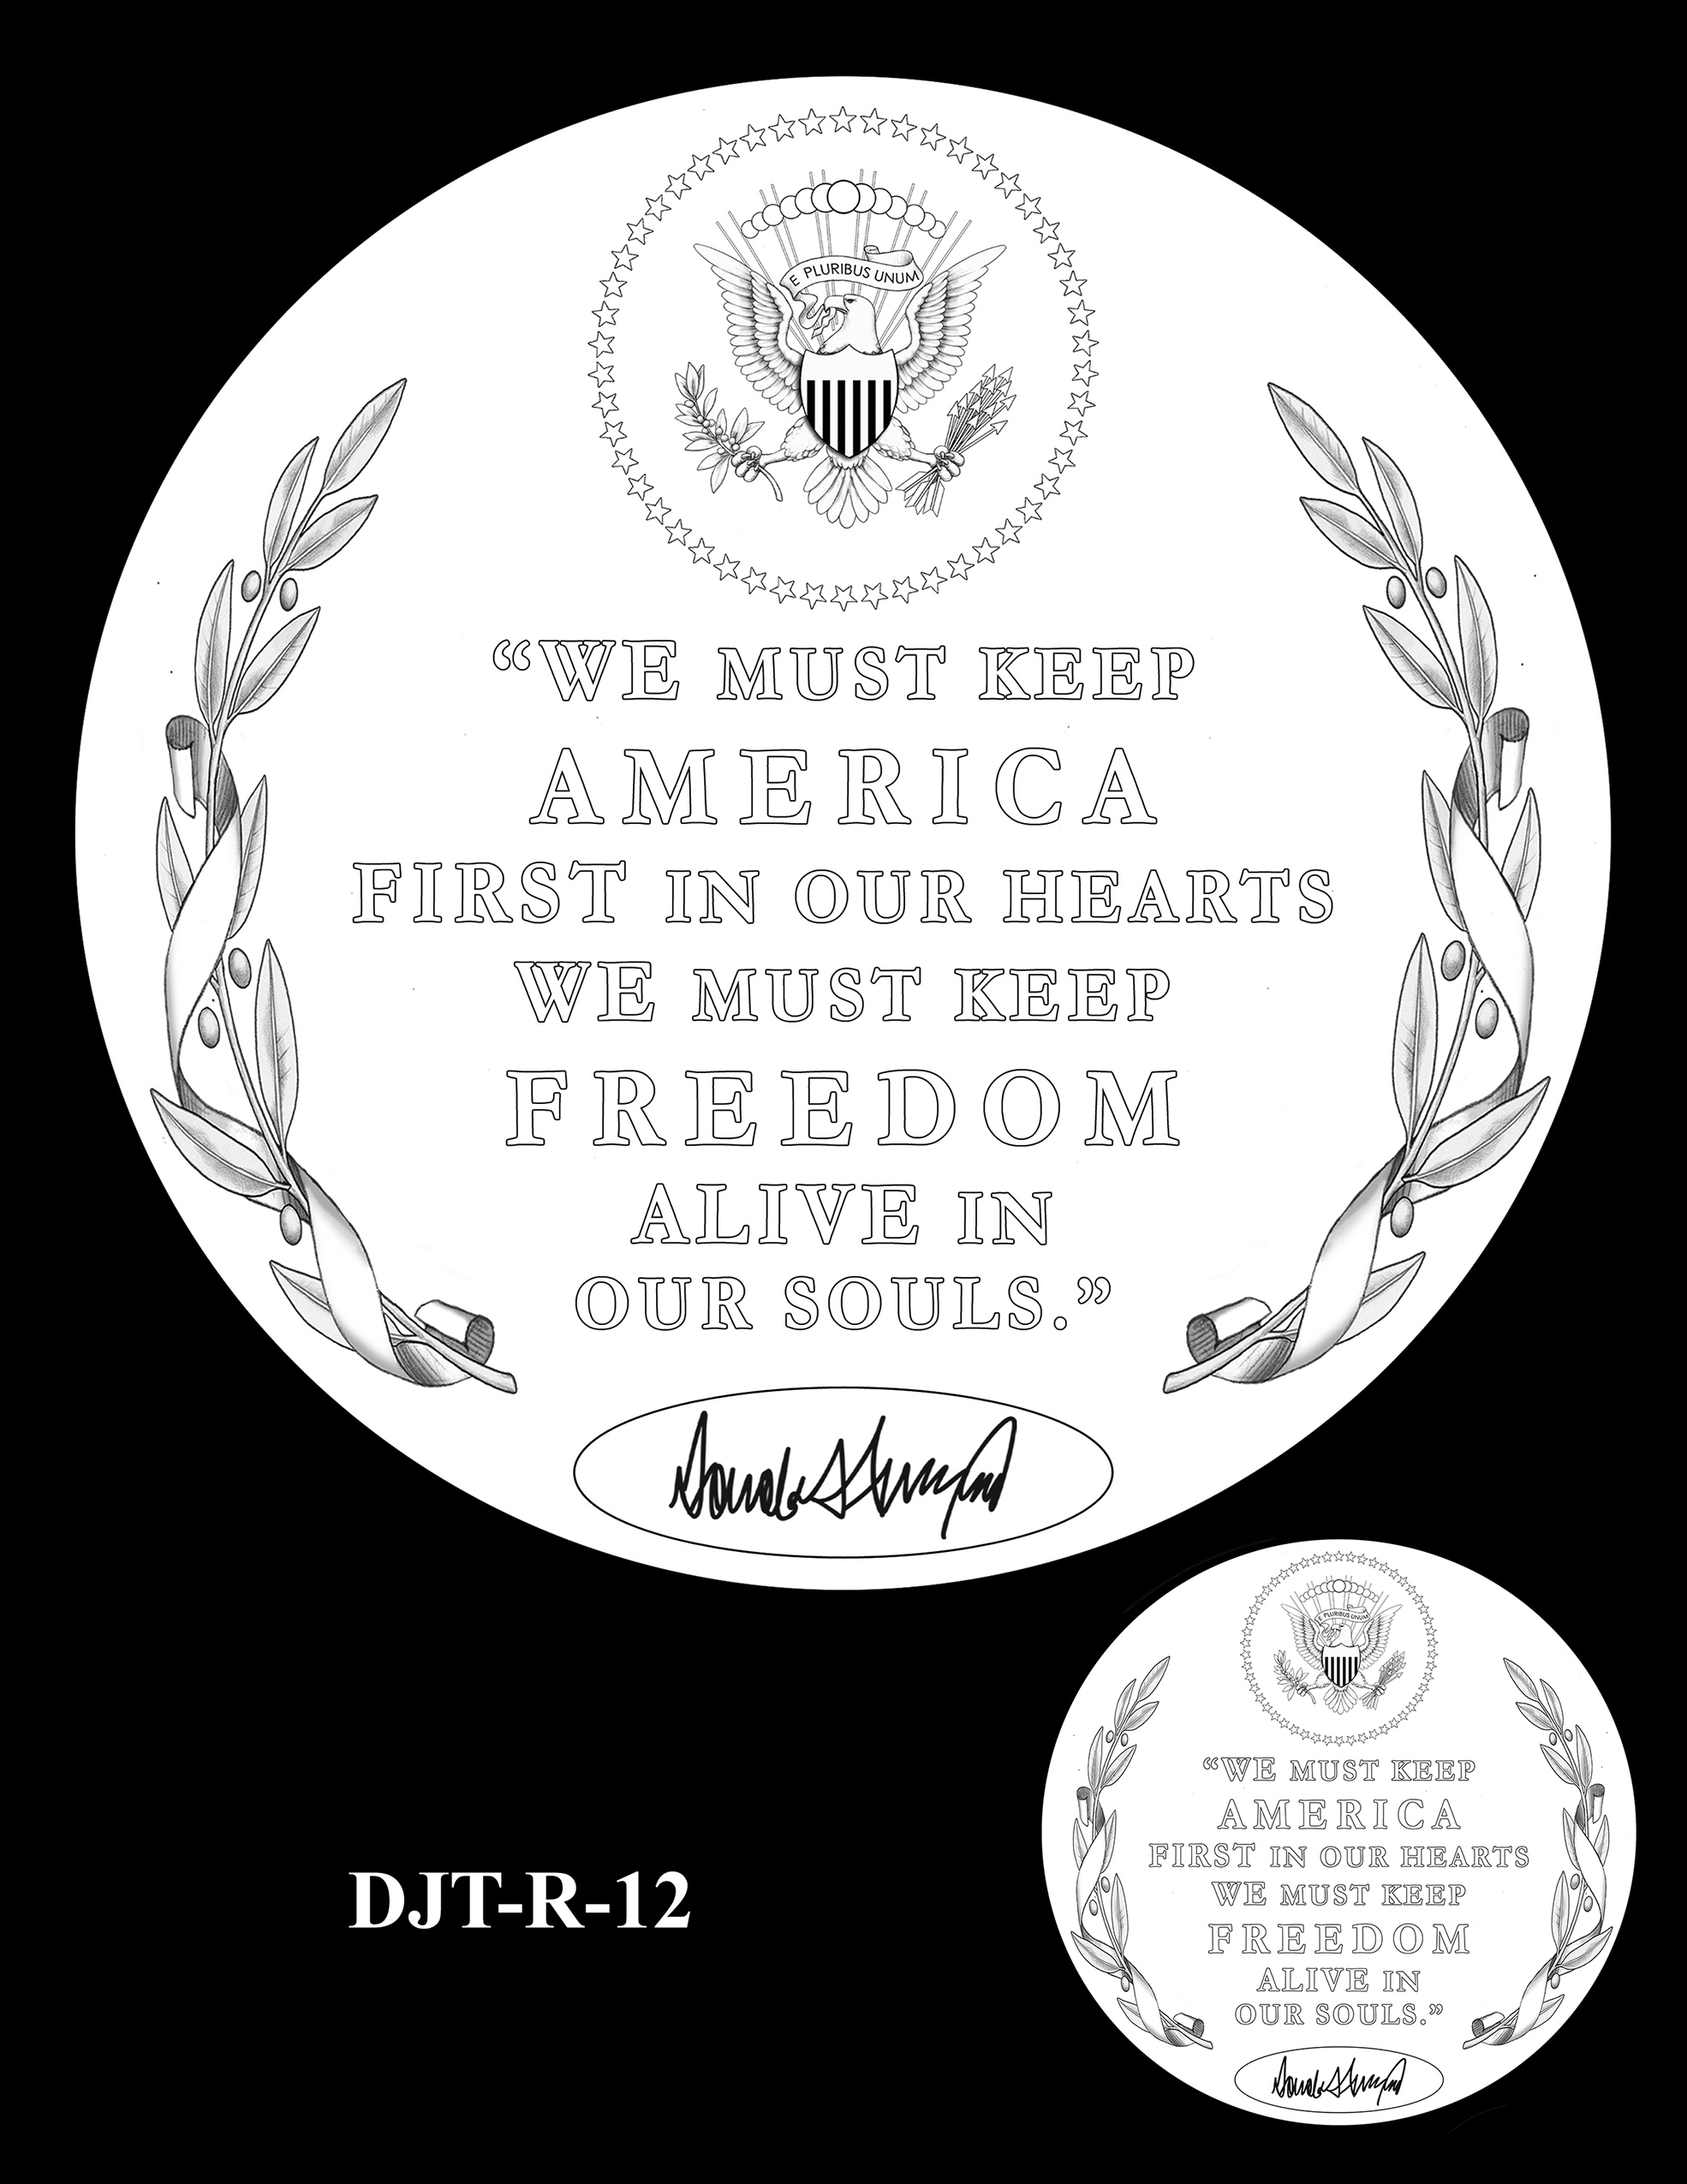 DJT-R-12 -- Donald J. Trump Presidential Medal